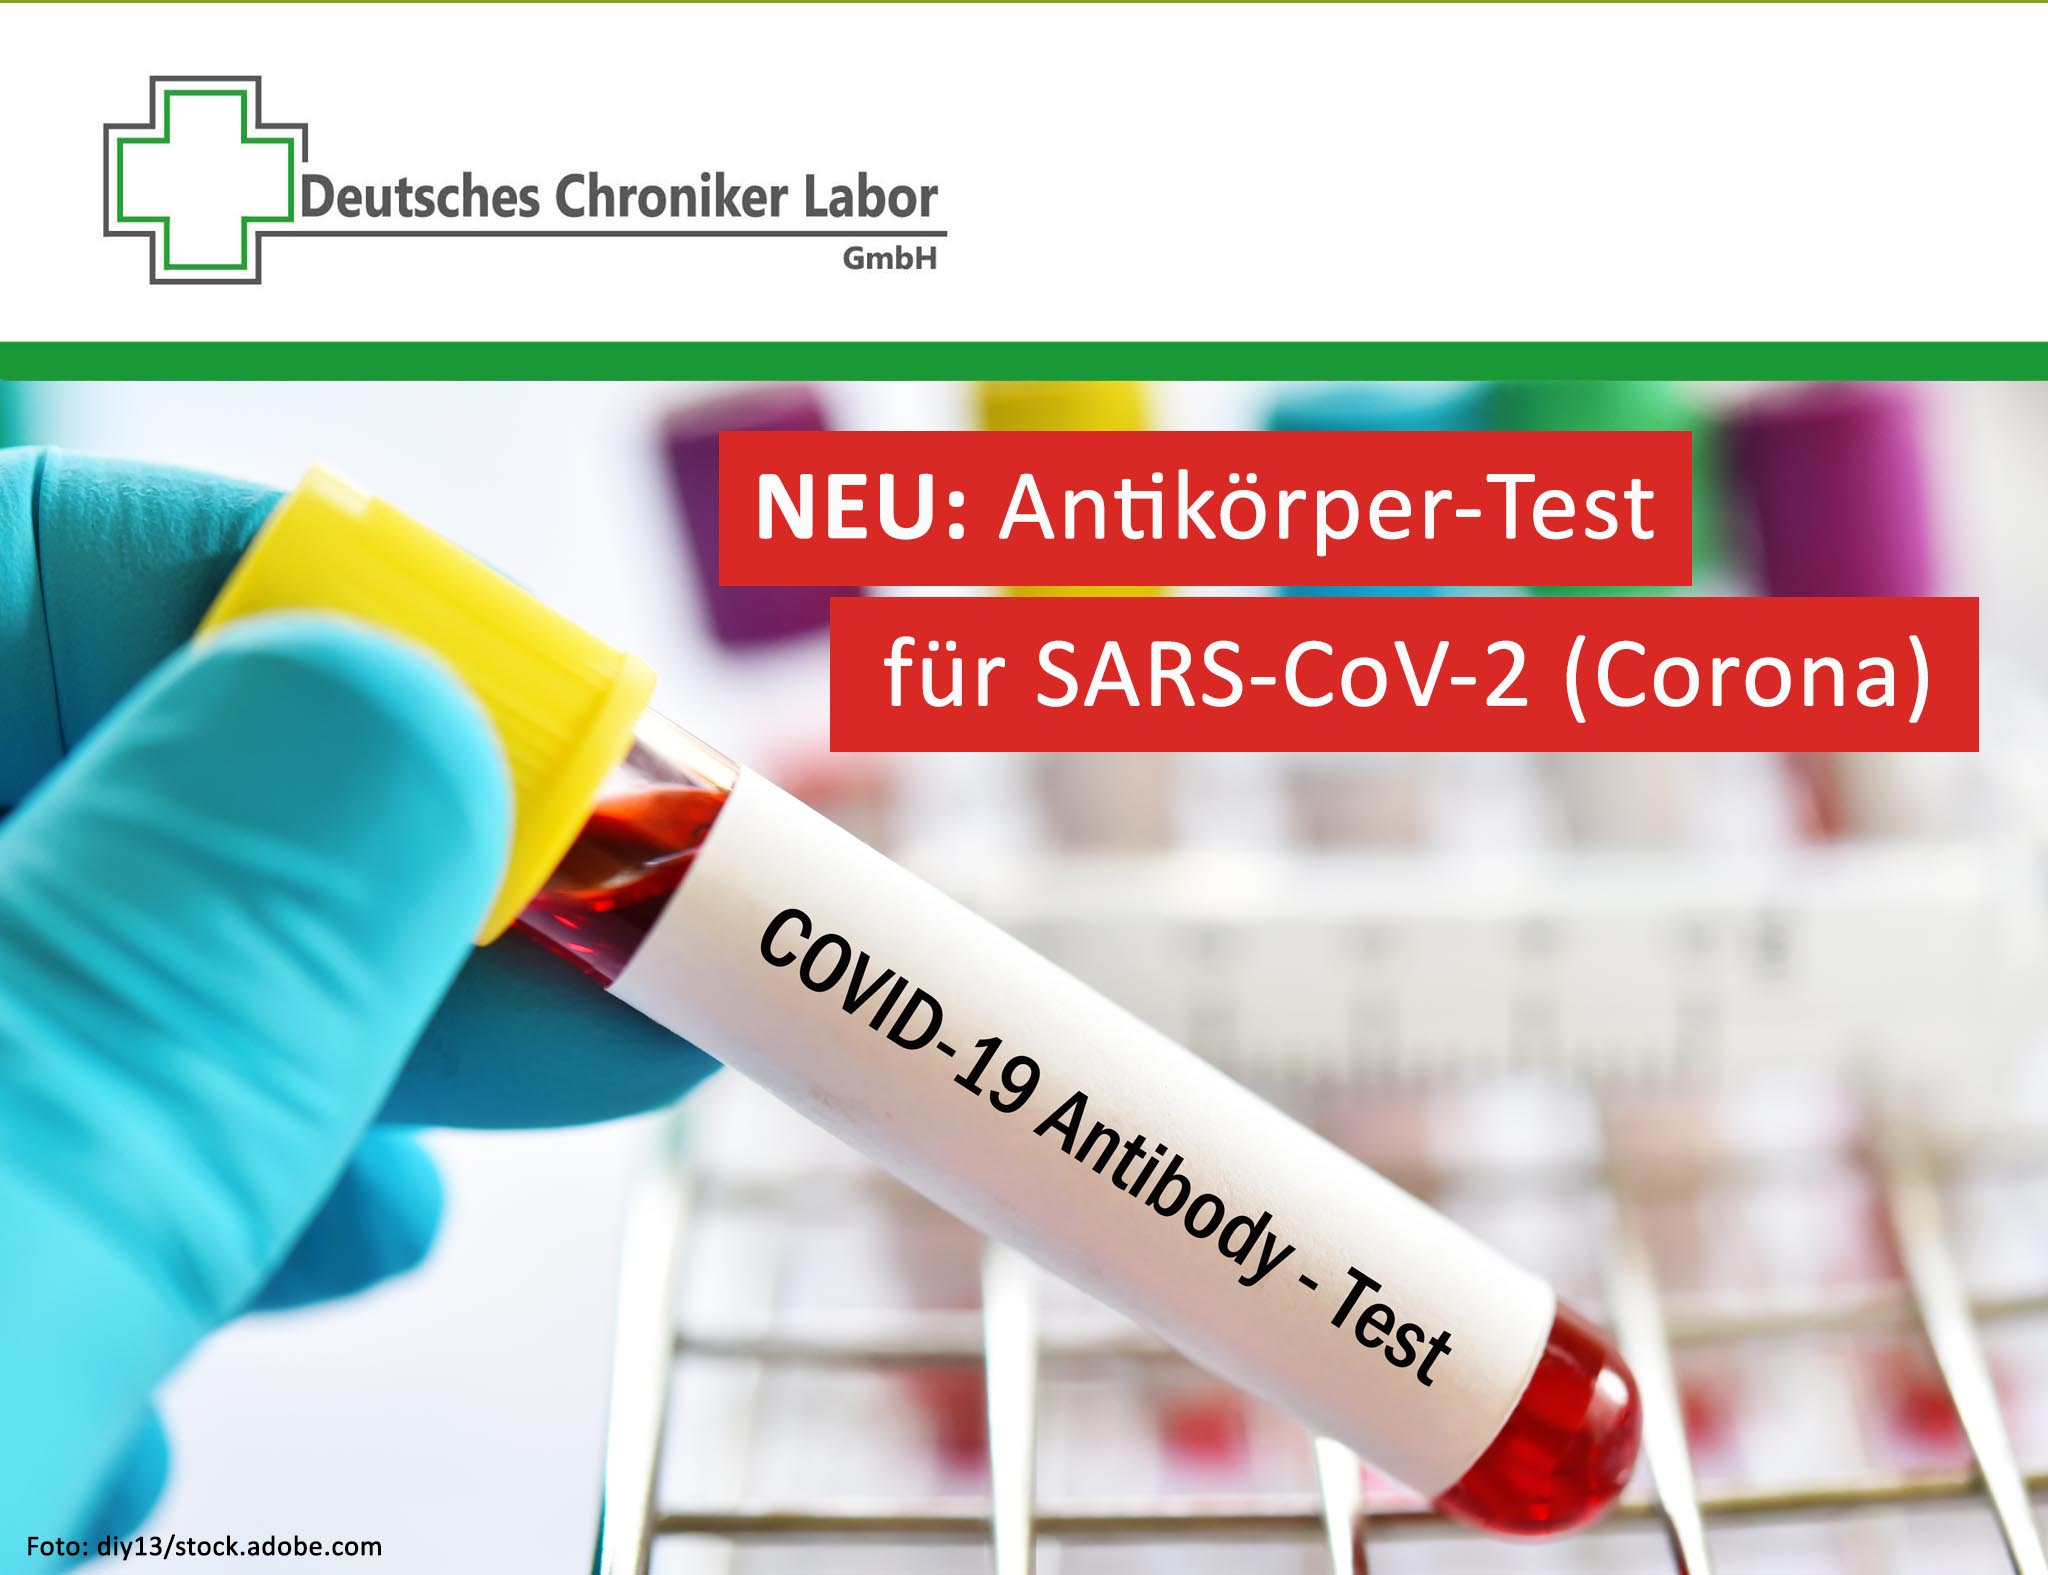 NEU: Antikörper-Test für SARS-CoV-2 (Corona)